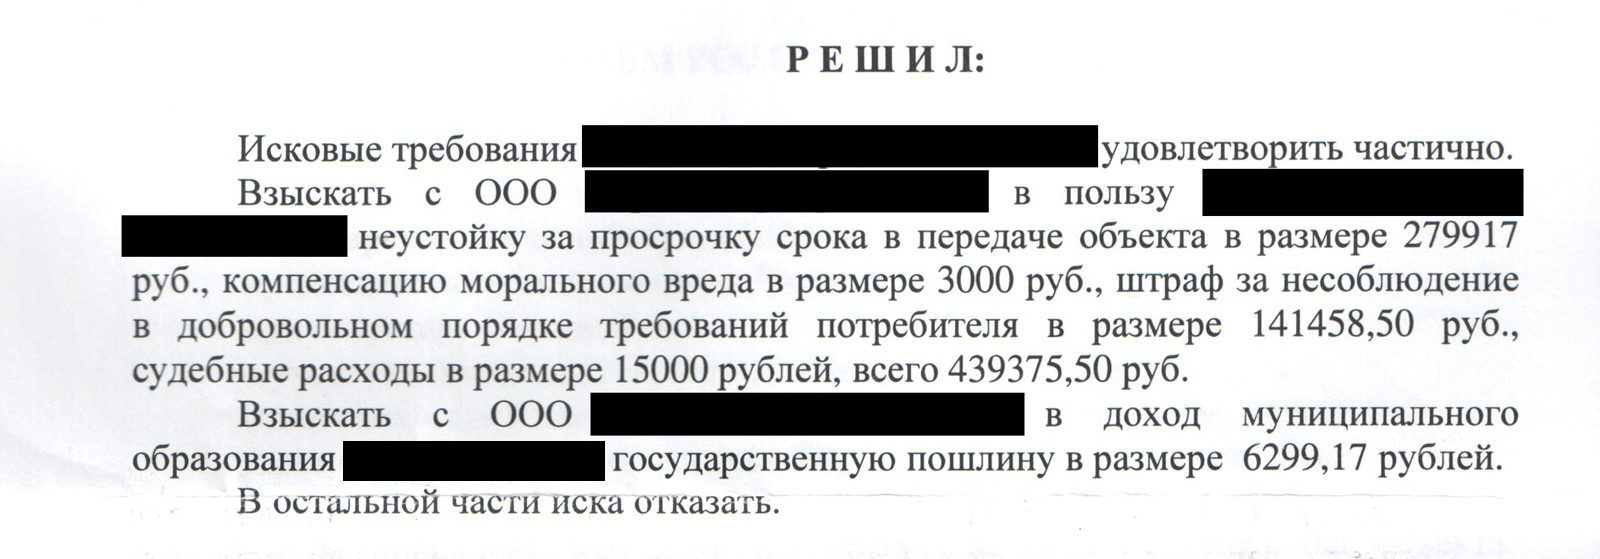 Мужчина получил 440 тысяч рублей компенсации по решению суда, но налог с него не удержали, а он ничего не знал. Потратил деньги, а потом пришлось платить налог — 55 тысяч рублей